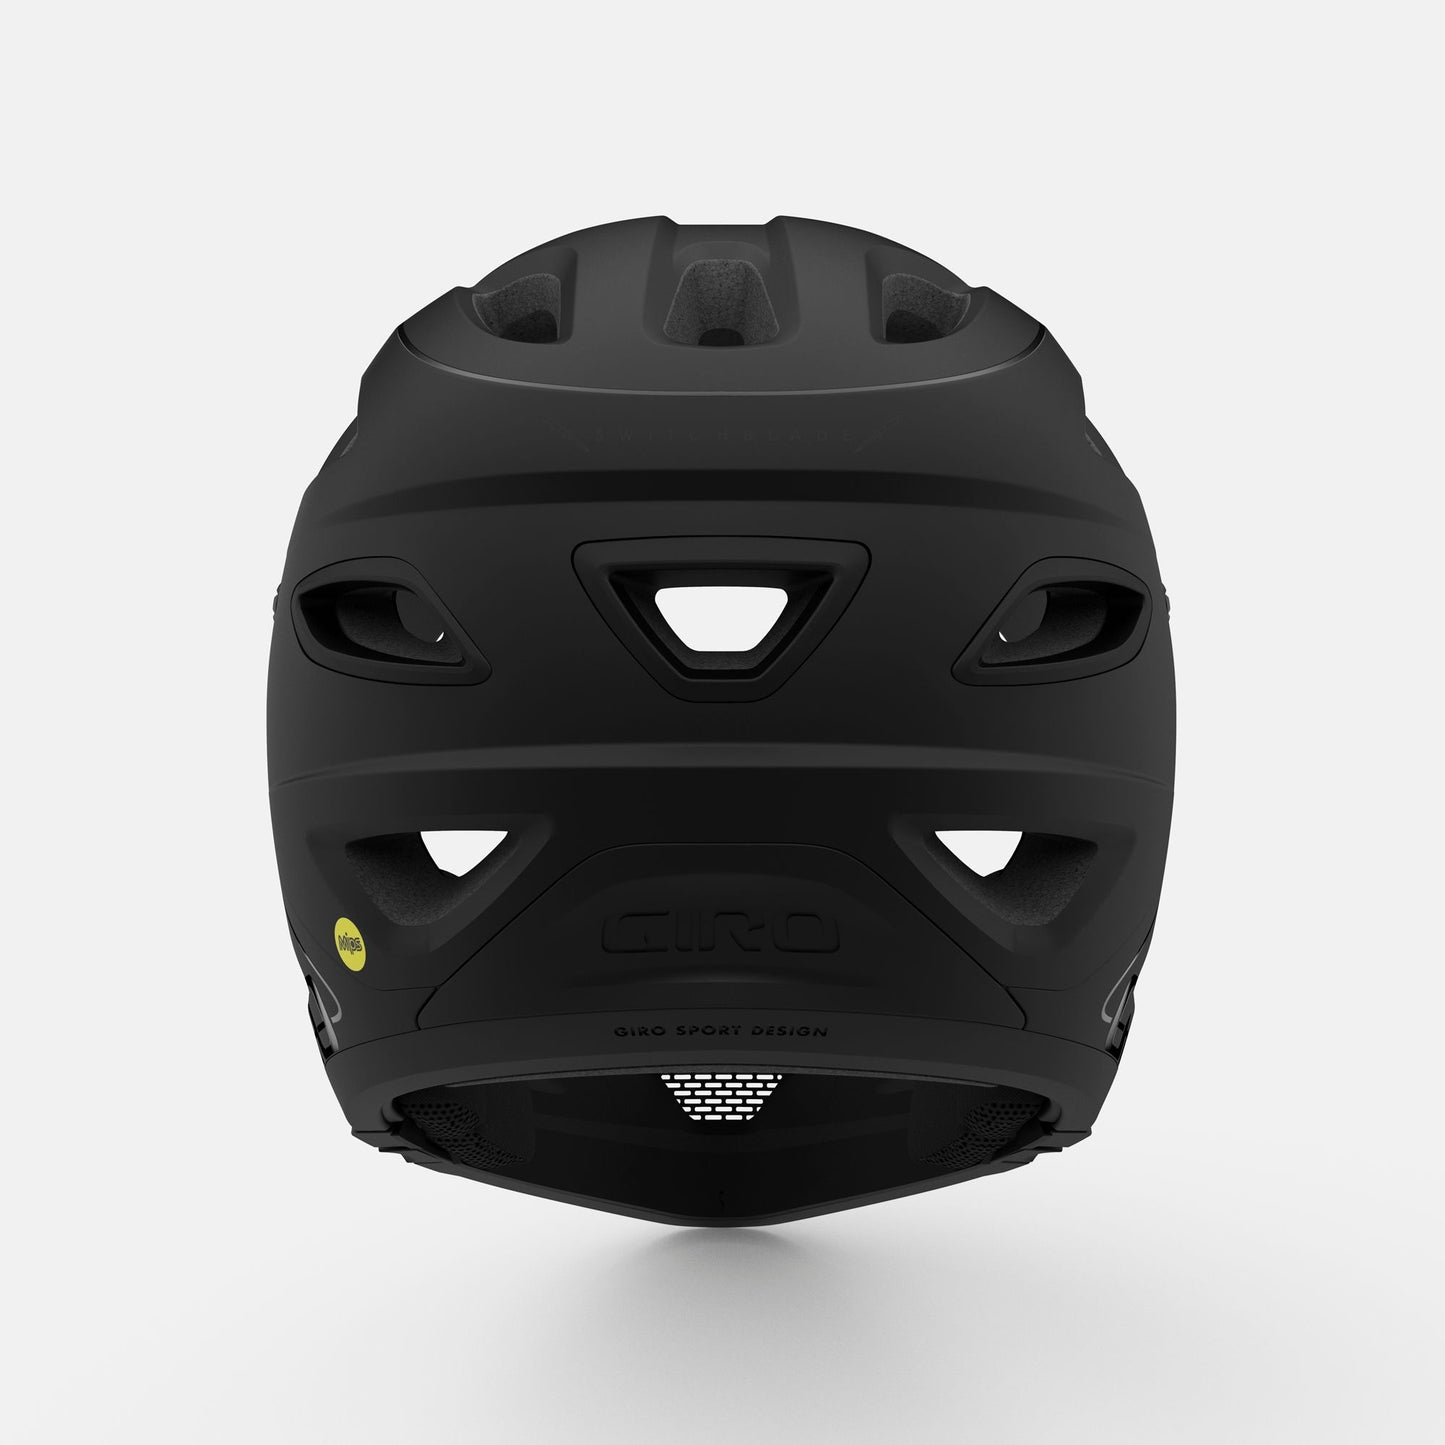 Giro Switchblade MIPS Helmet